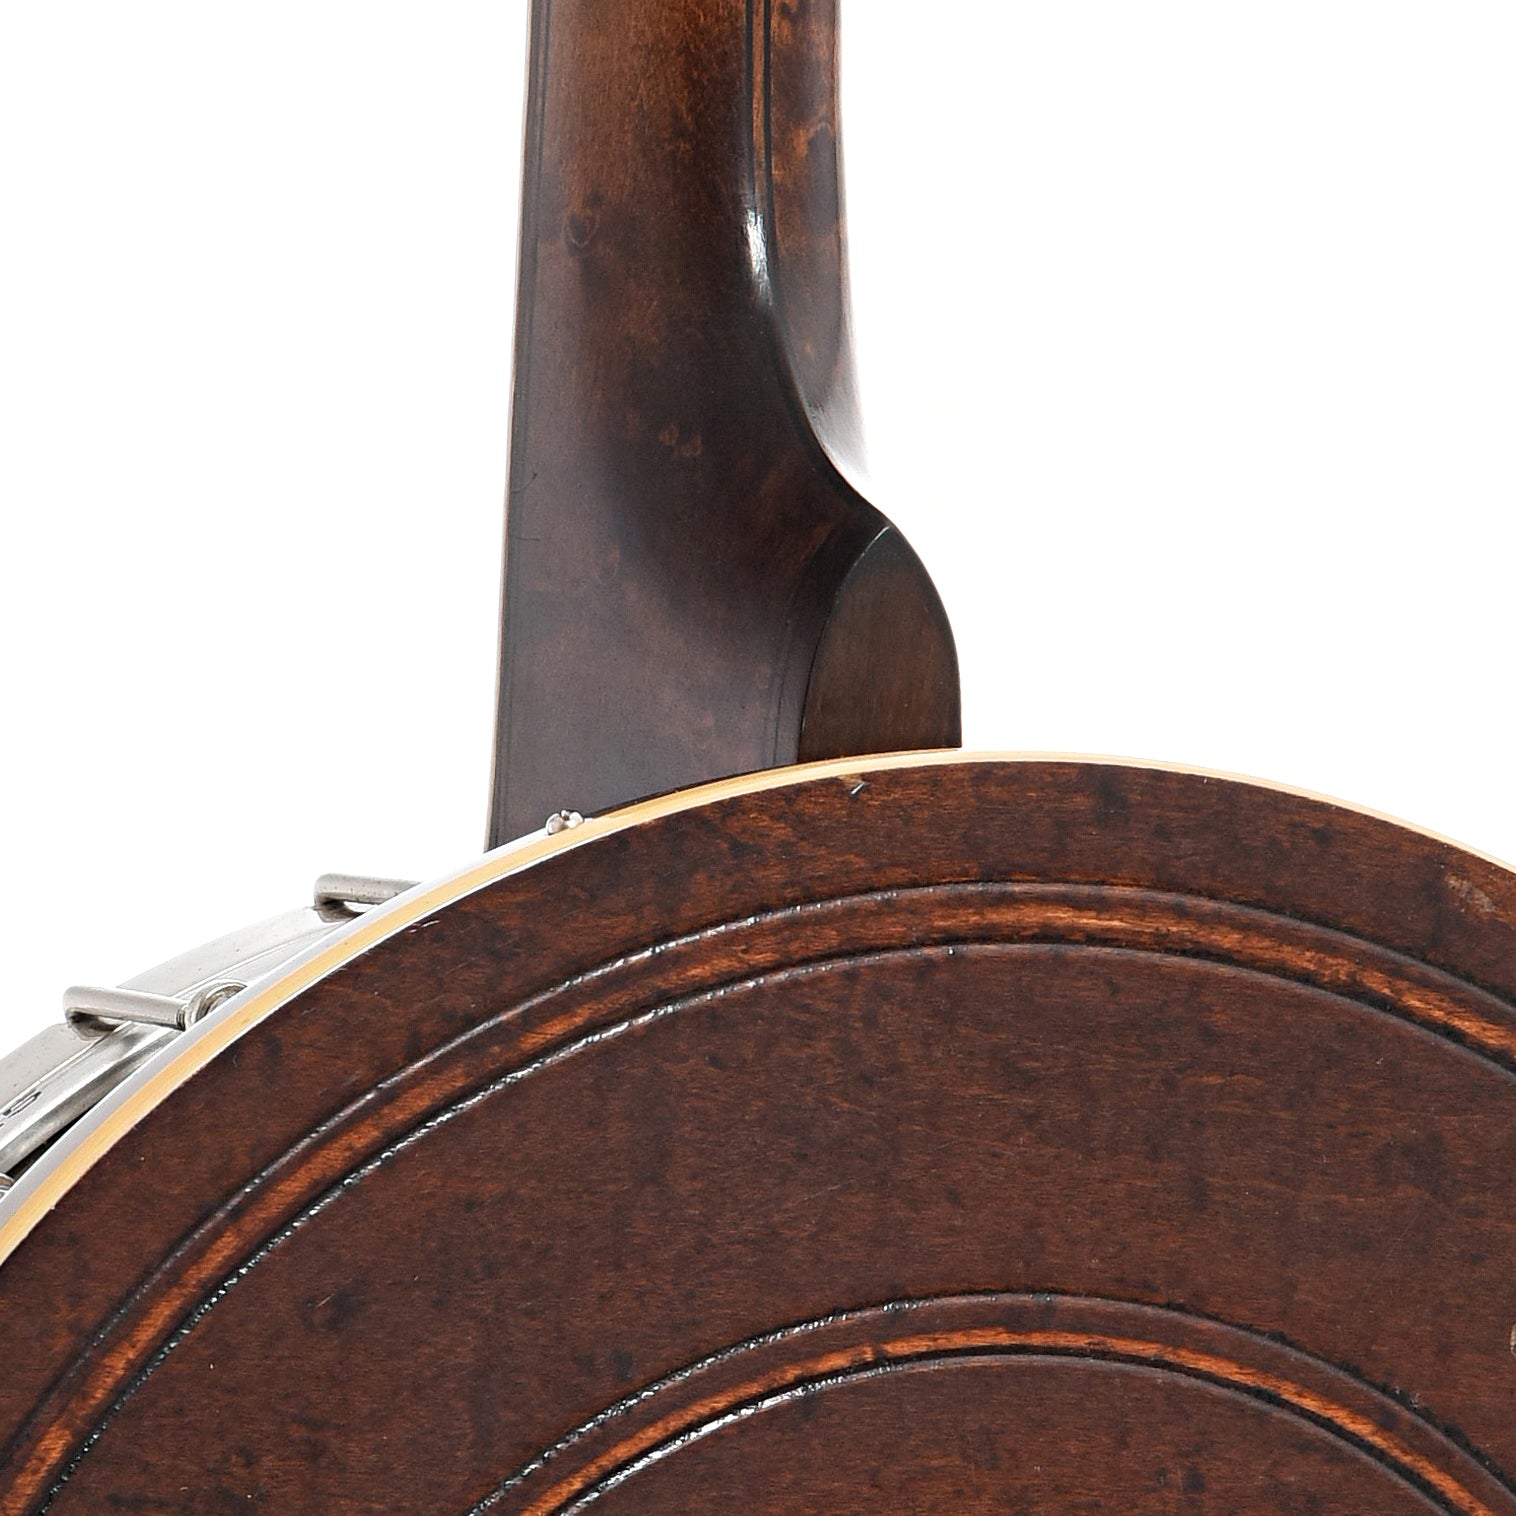 Heel of Bacon & Day Silver Bell No.1 Tenor Banjo (c.1923)